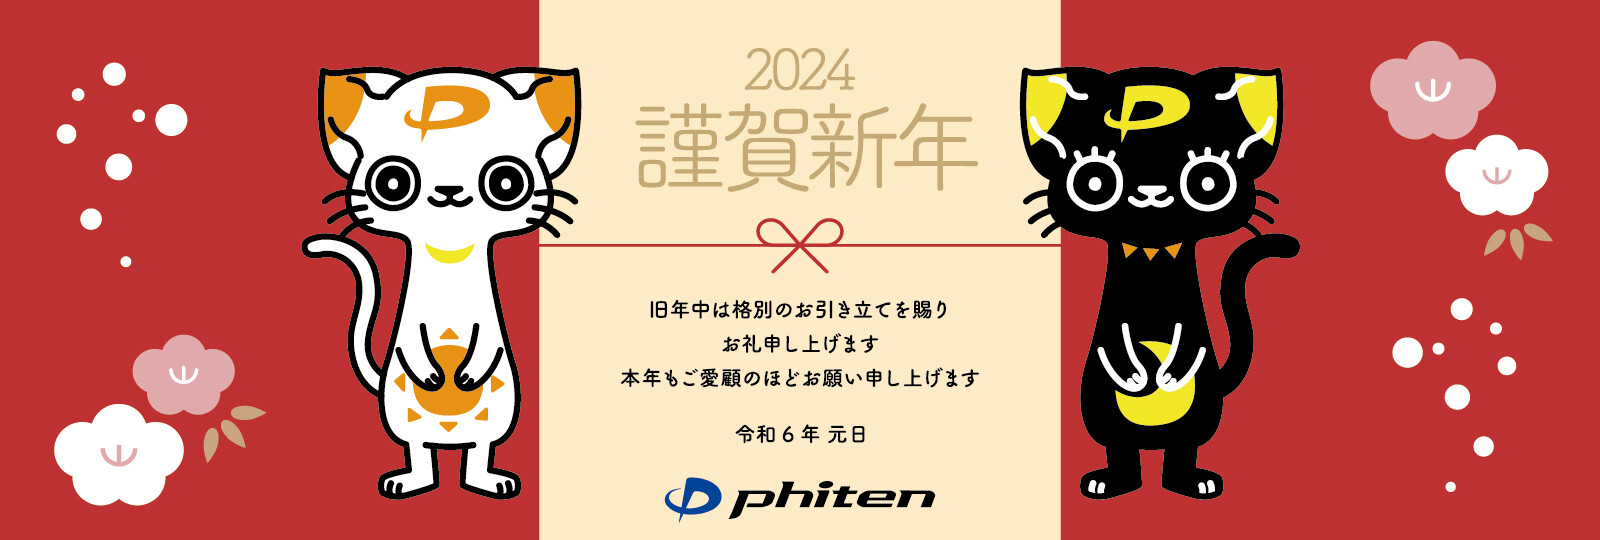 2024新年挨拶_各種リサイズ_1600×540.jpg